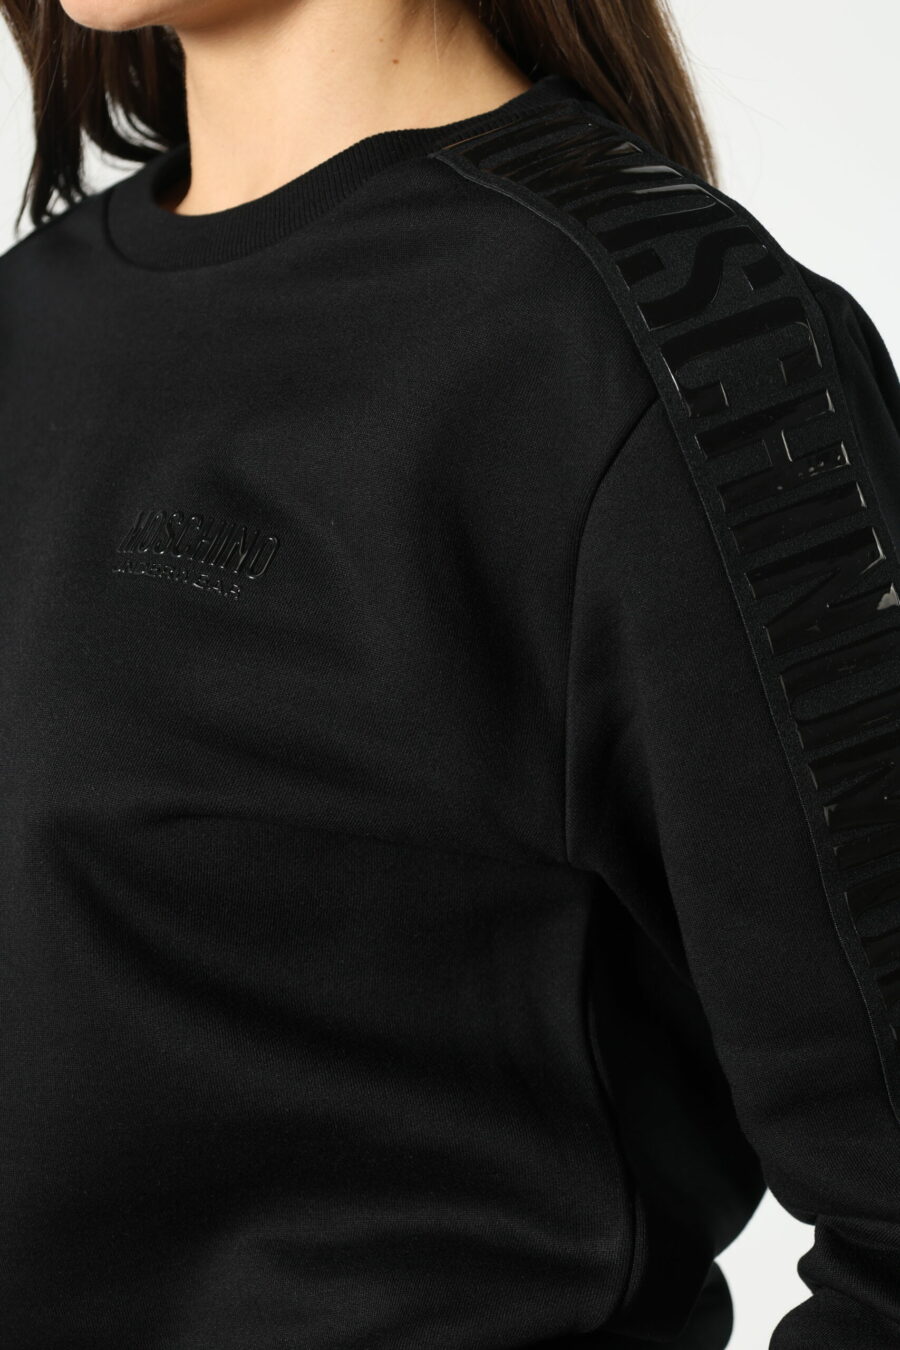 Sweatshirt noir avec logo ruban monochrome sur les côtés - 8052865435499 471 scaled